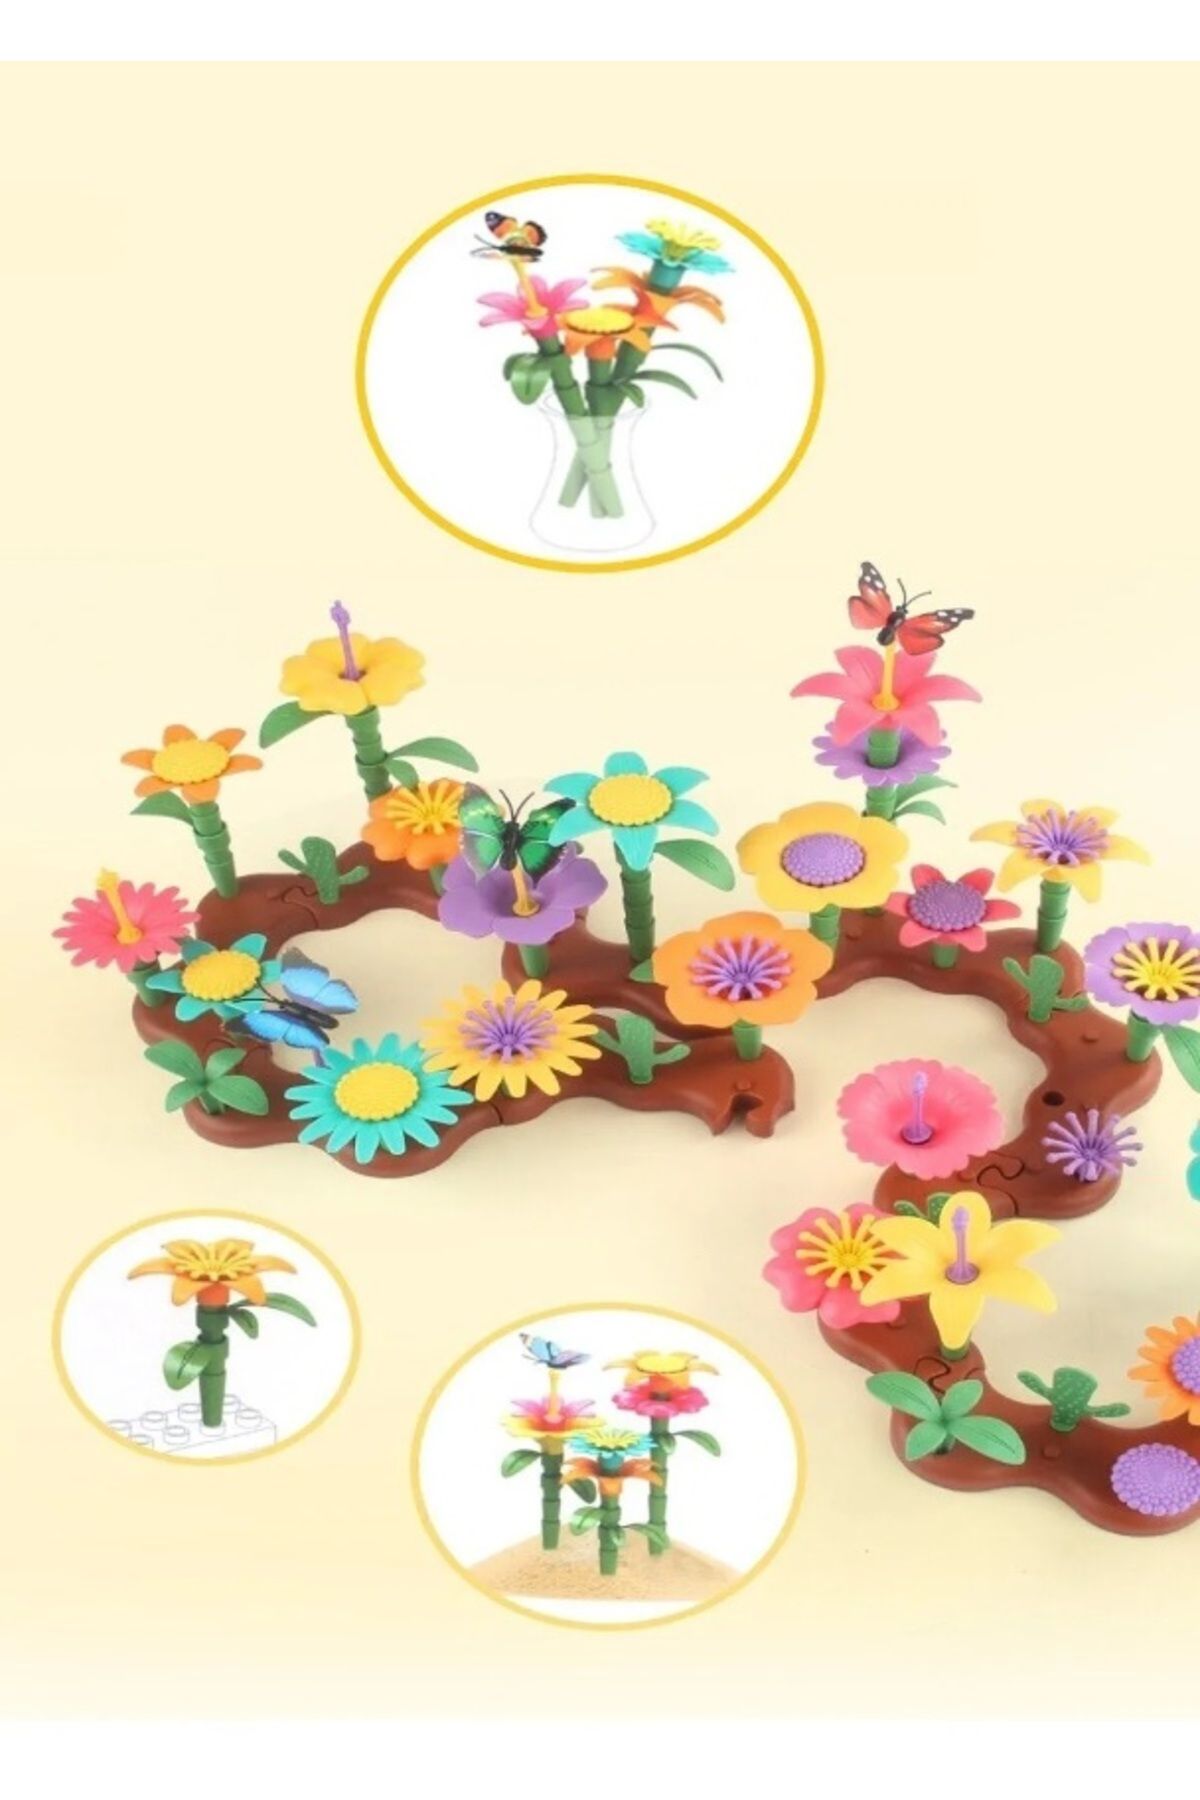 KİNG VEGAS TİCARET 53 Parça Bahçe Çiçek Yapım Seti Yapboz Bul Tak Puzzle Plaj Deniz Oyuncağı Eğitici Oyuncak